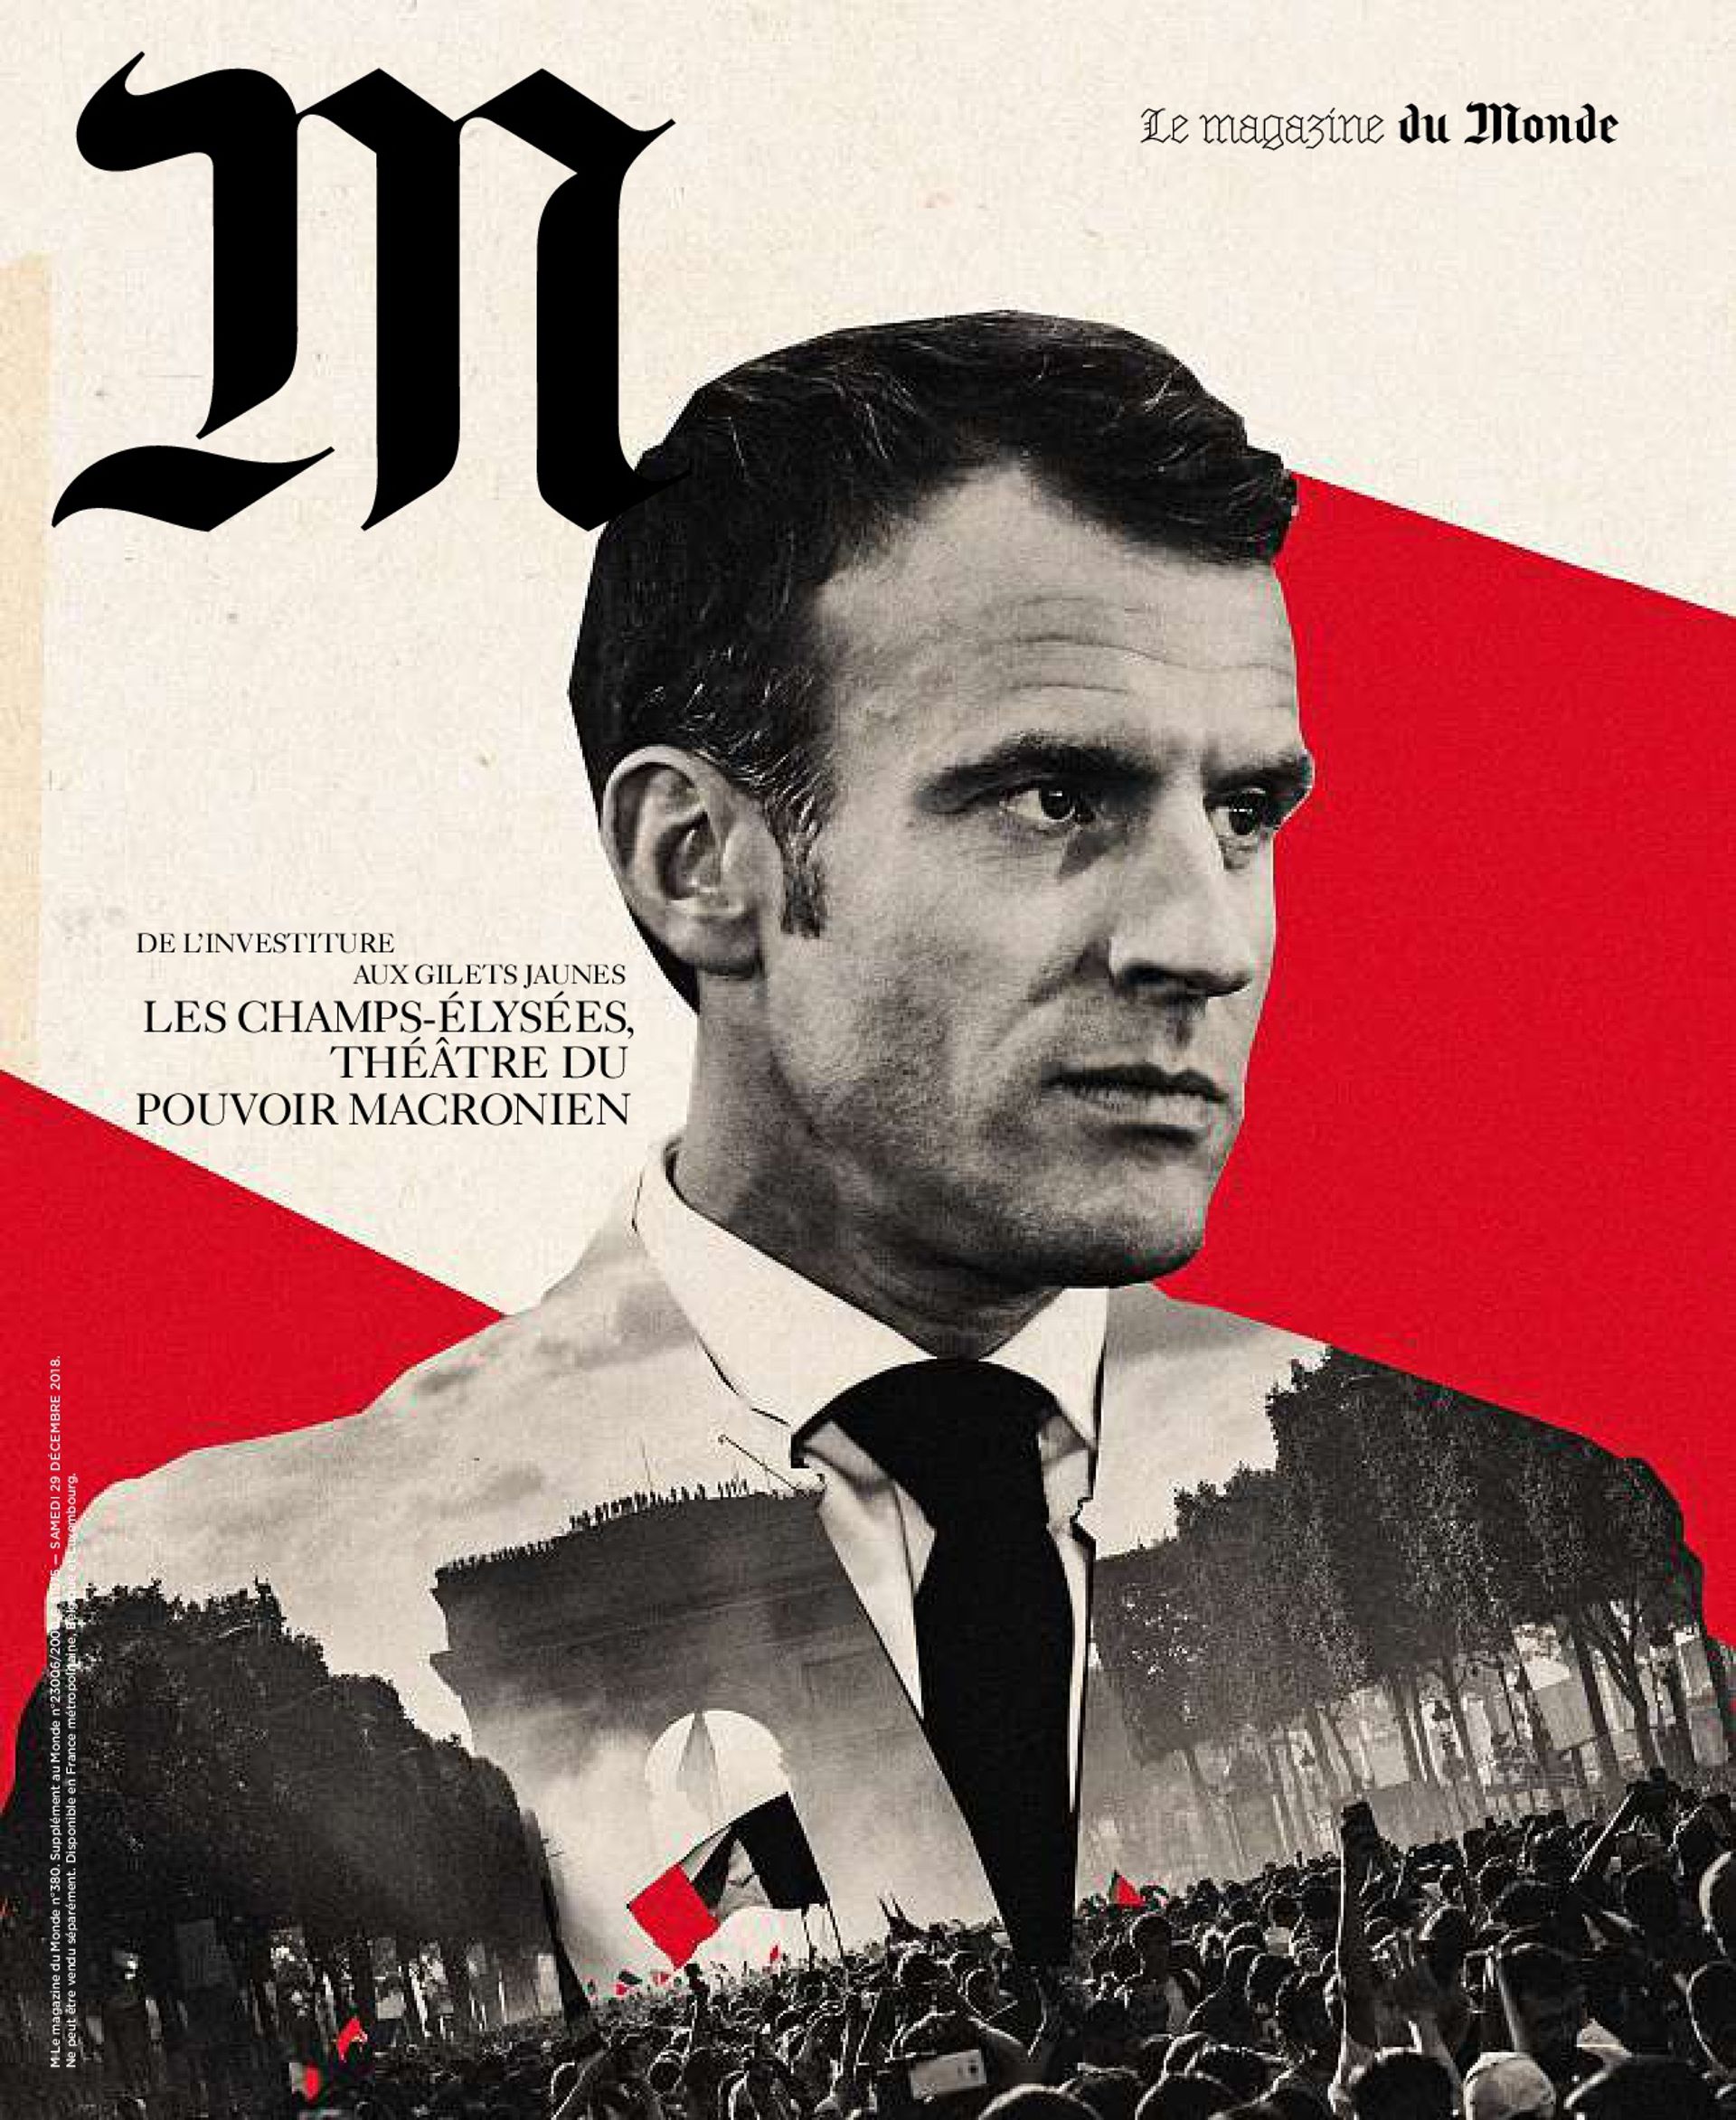 "Le Monde" a-t-il vraiment assimilé Emmanuel Macron à Adolf Hitler ? 